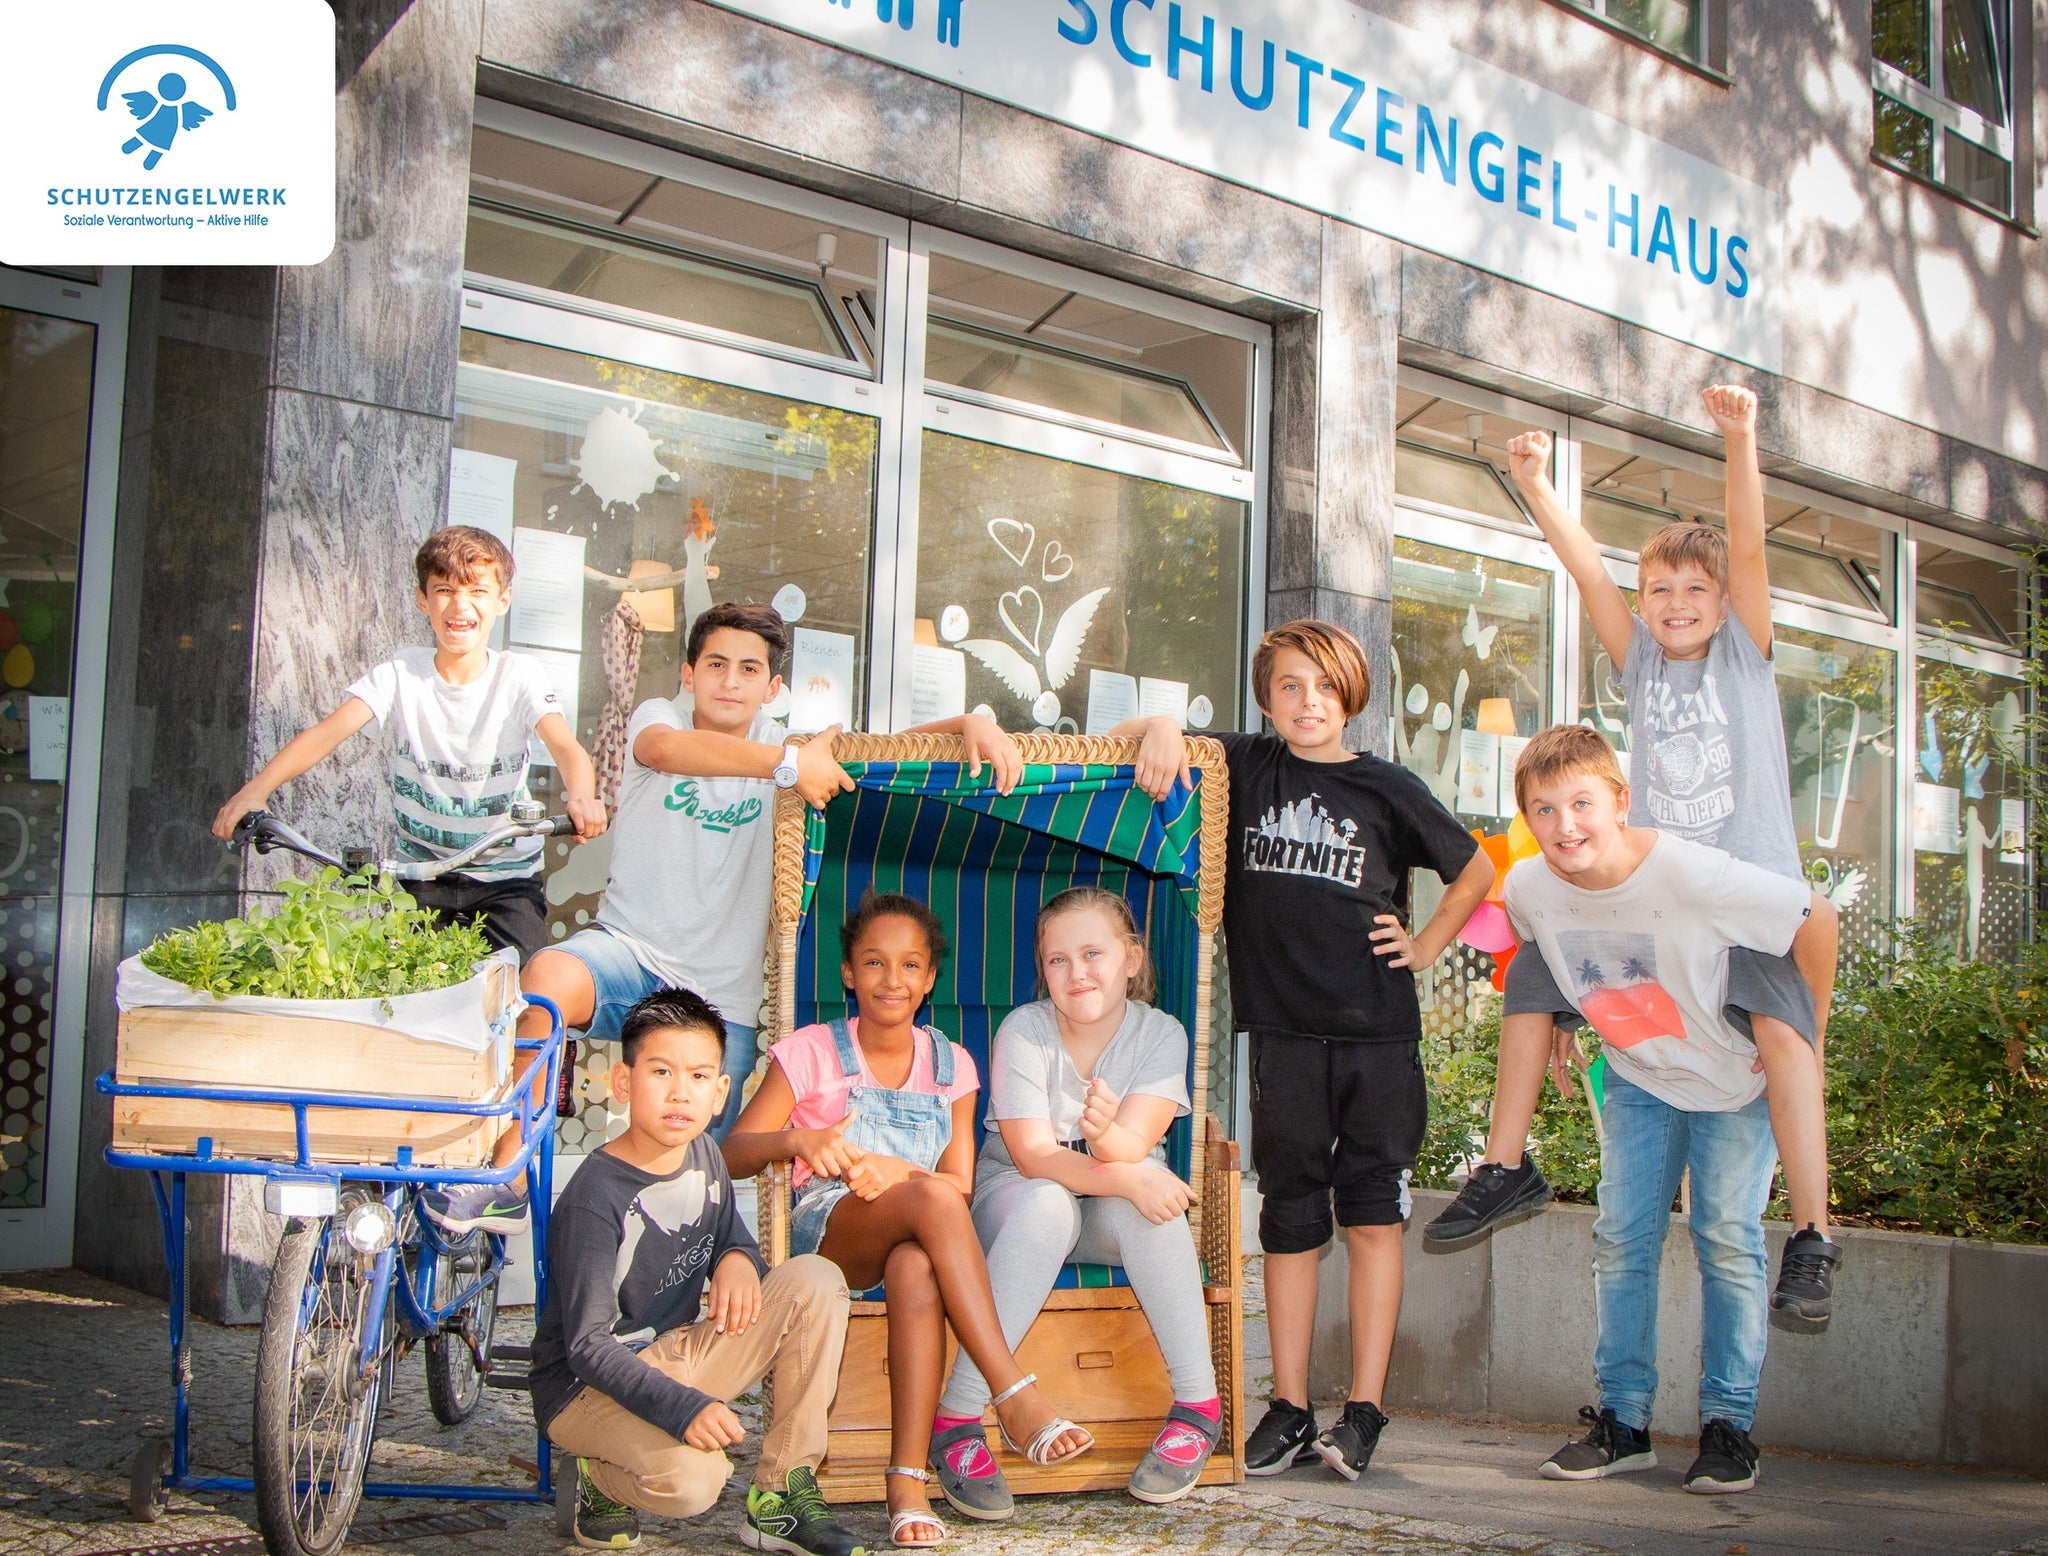 eine Gruppe Schutzengel Kids gut gelaunt vor einem der SchutzengelWerke in Berlin (aufgenommen vor den pandemiebedingten Hygienverordnungen) 